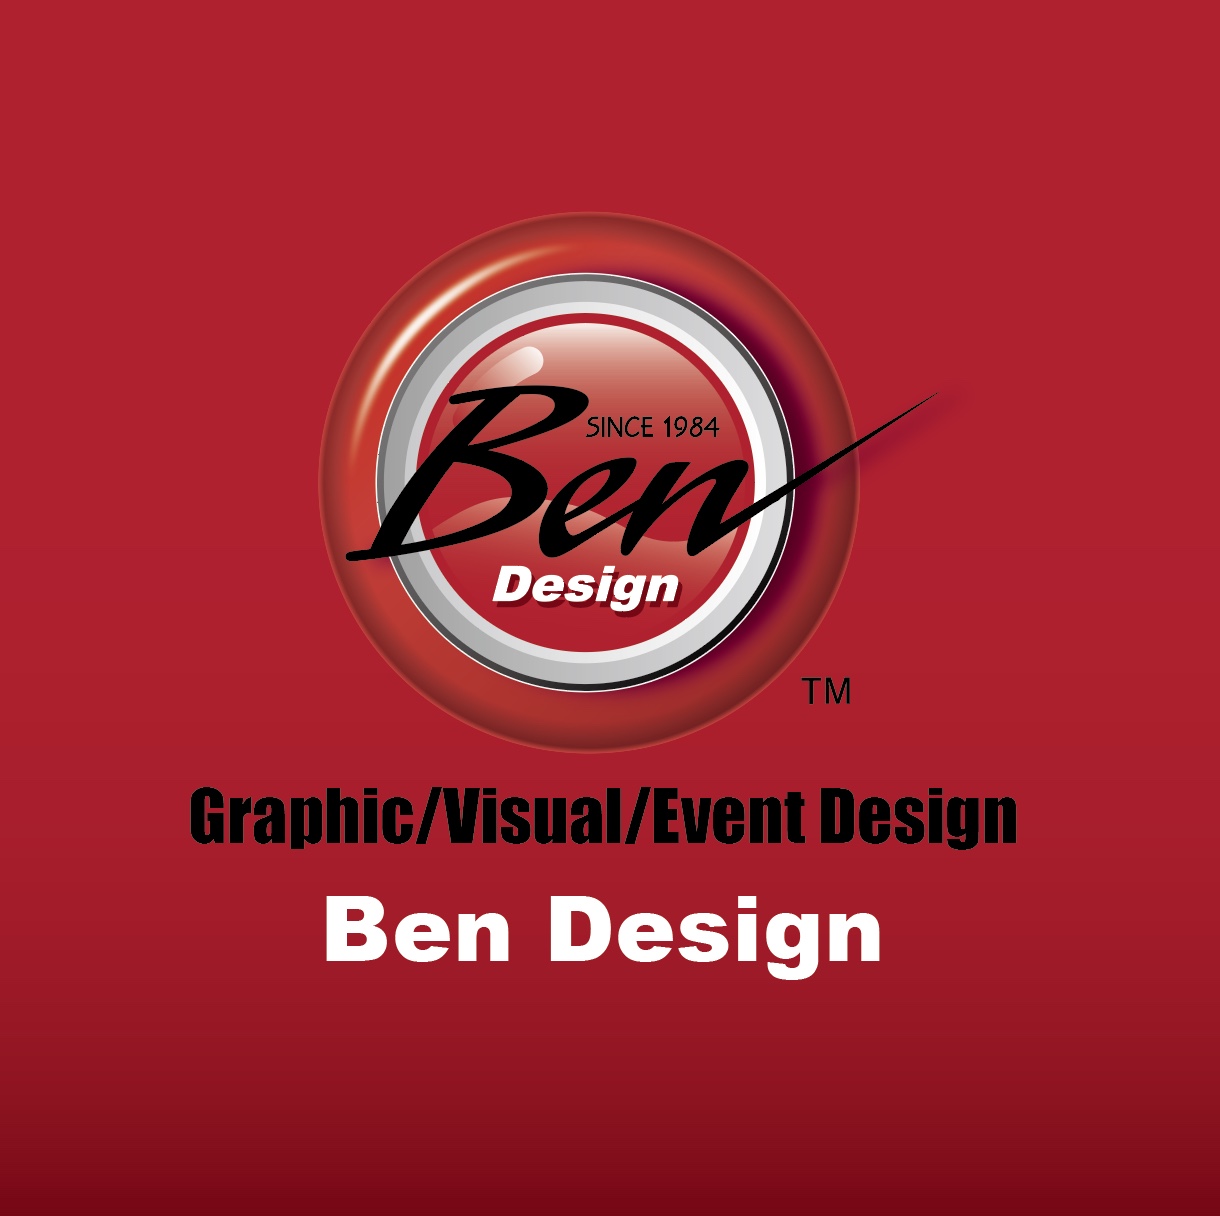 Ben Design 0ffice